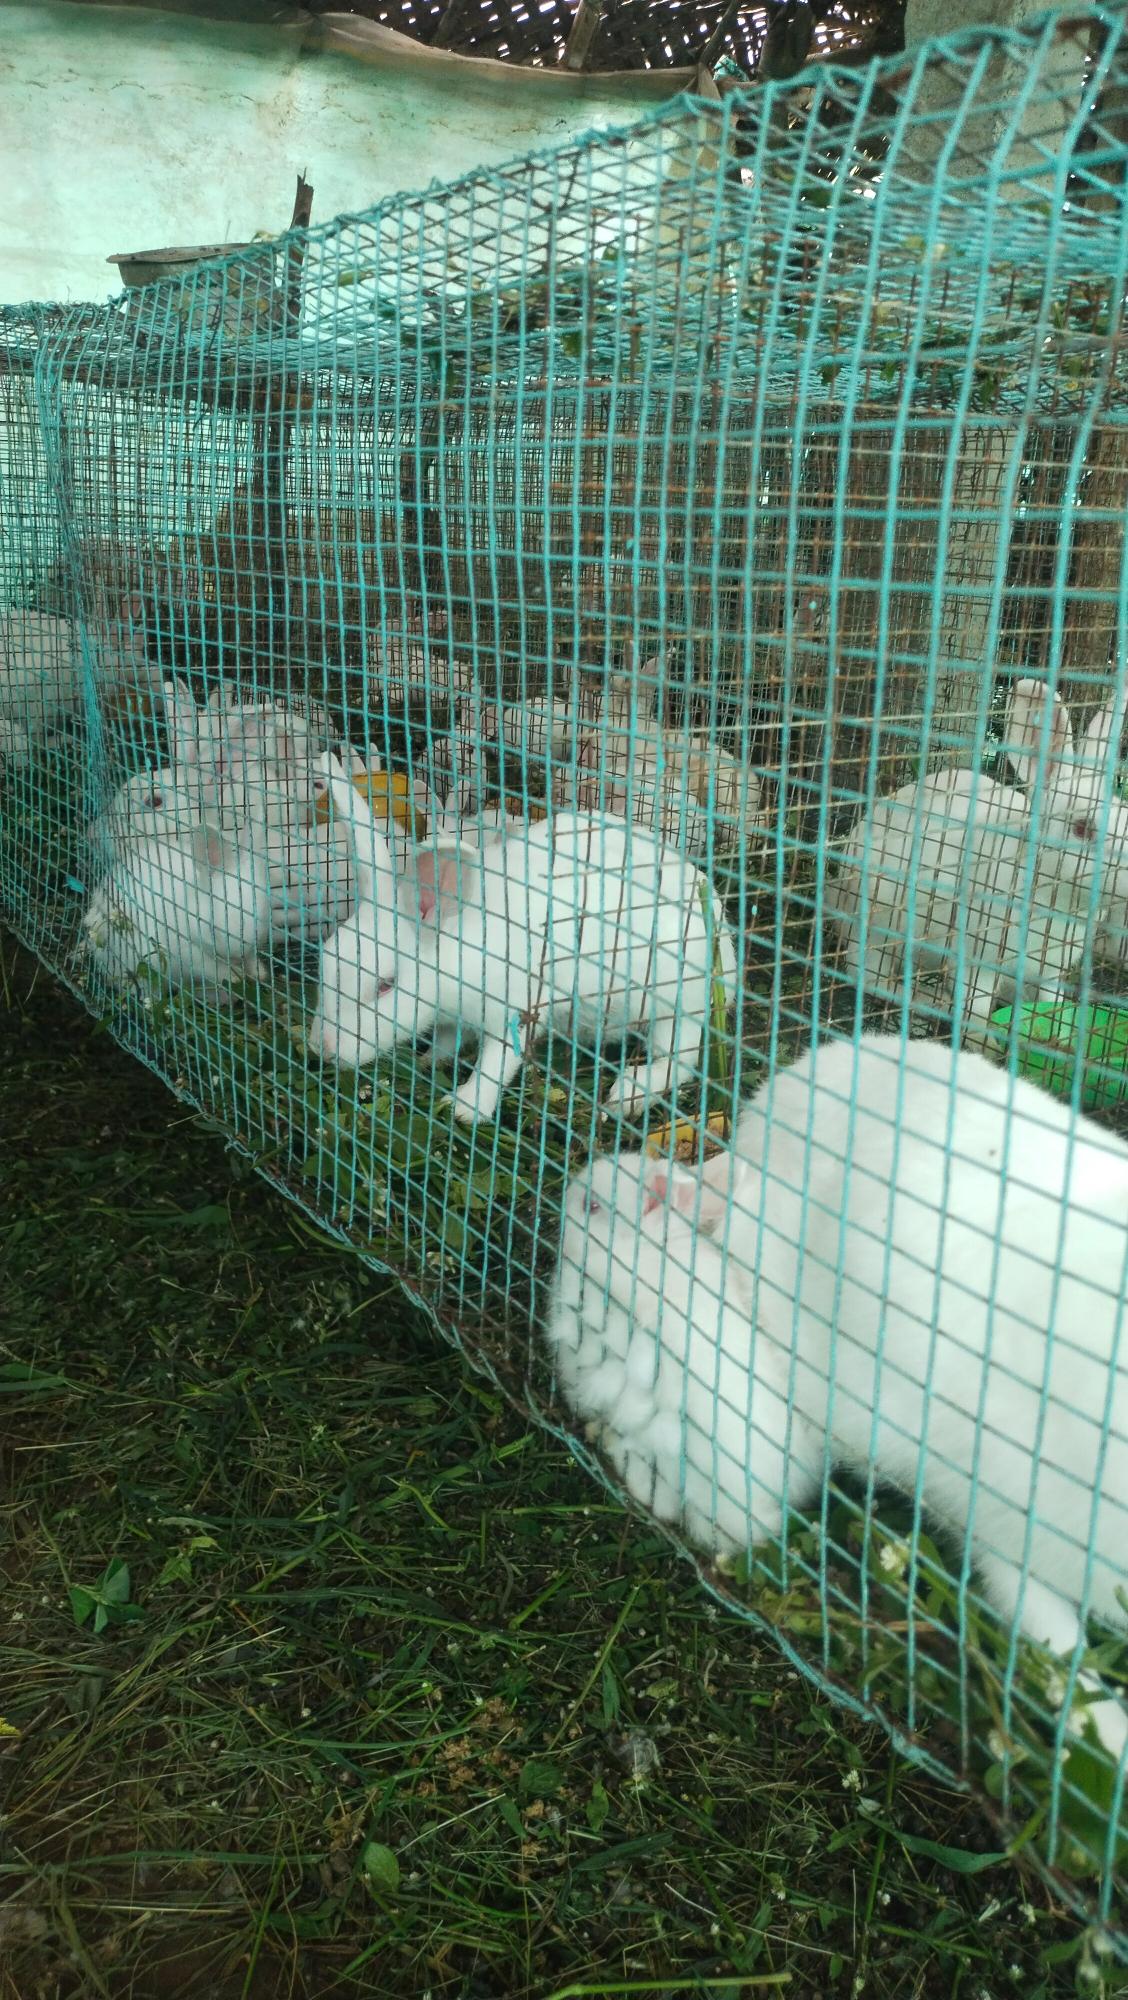 Ammu rabbit farm